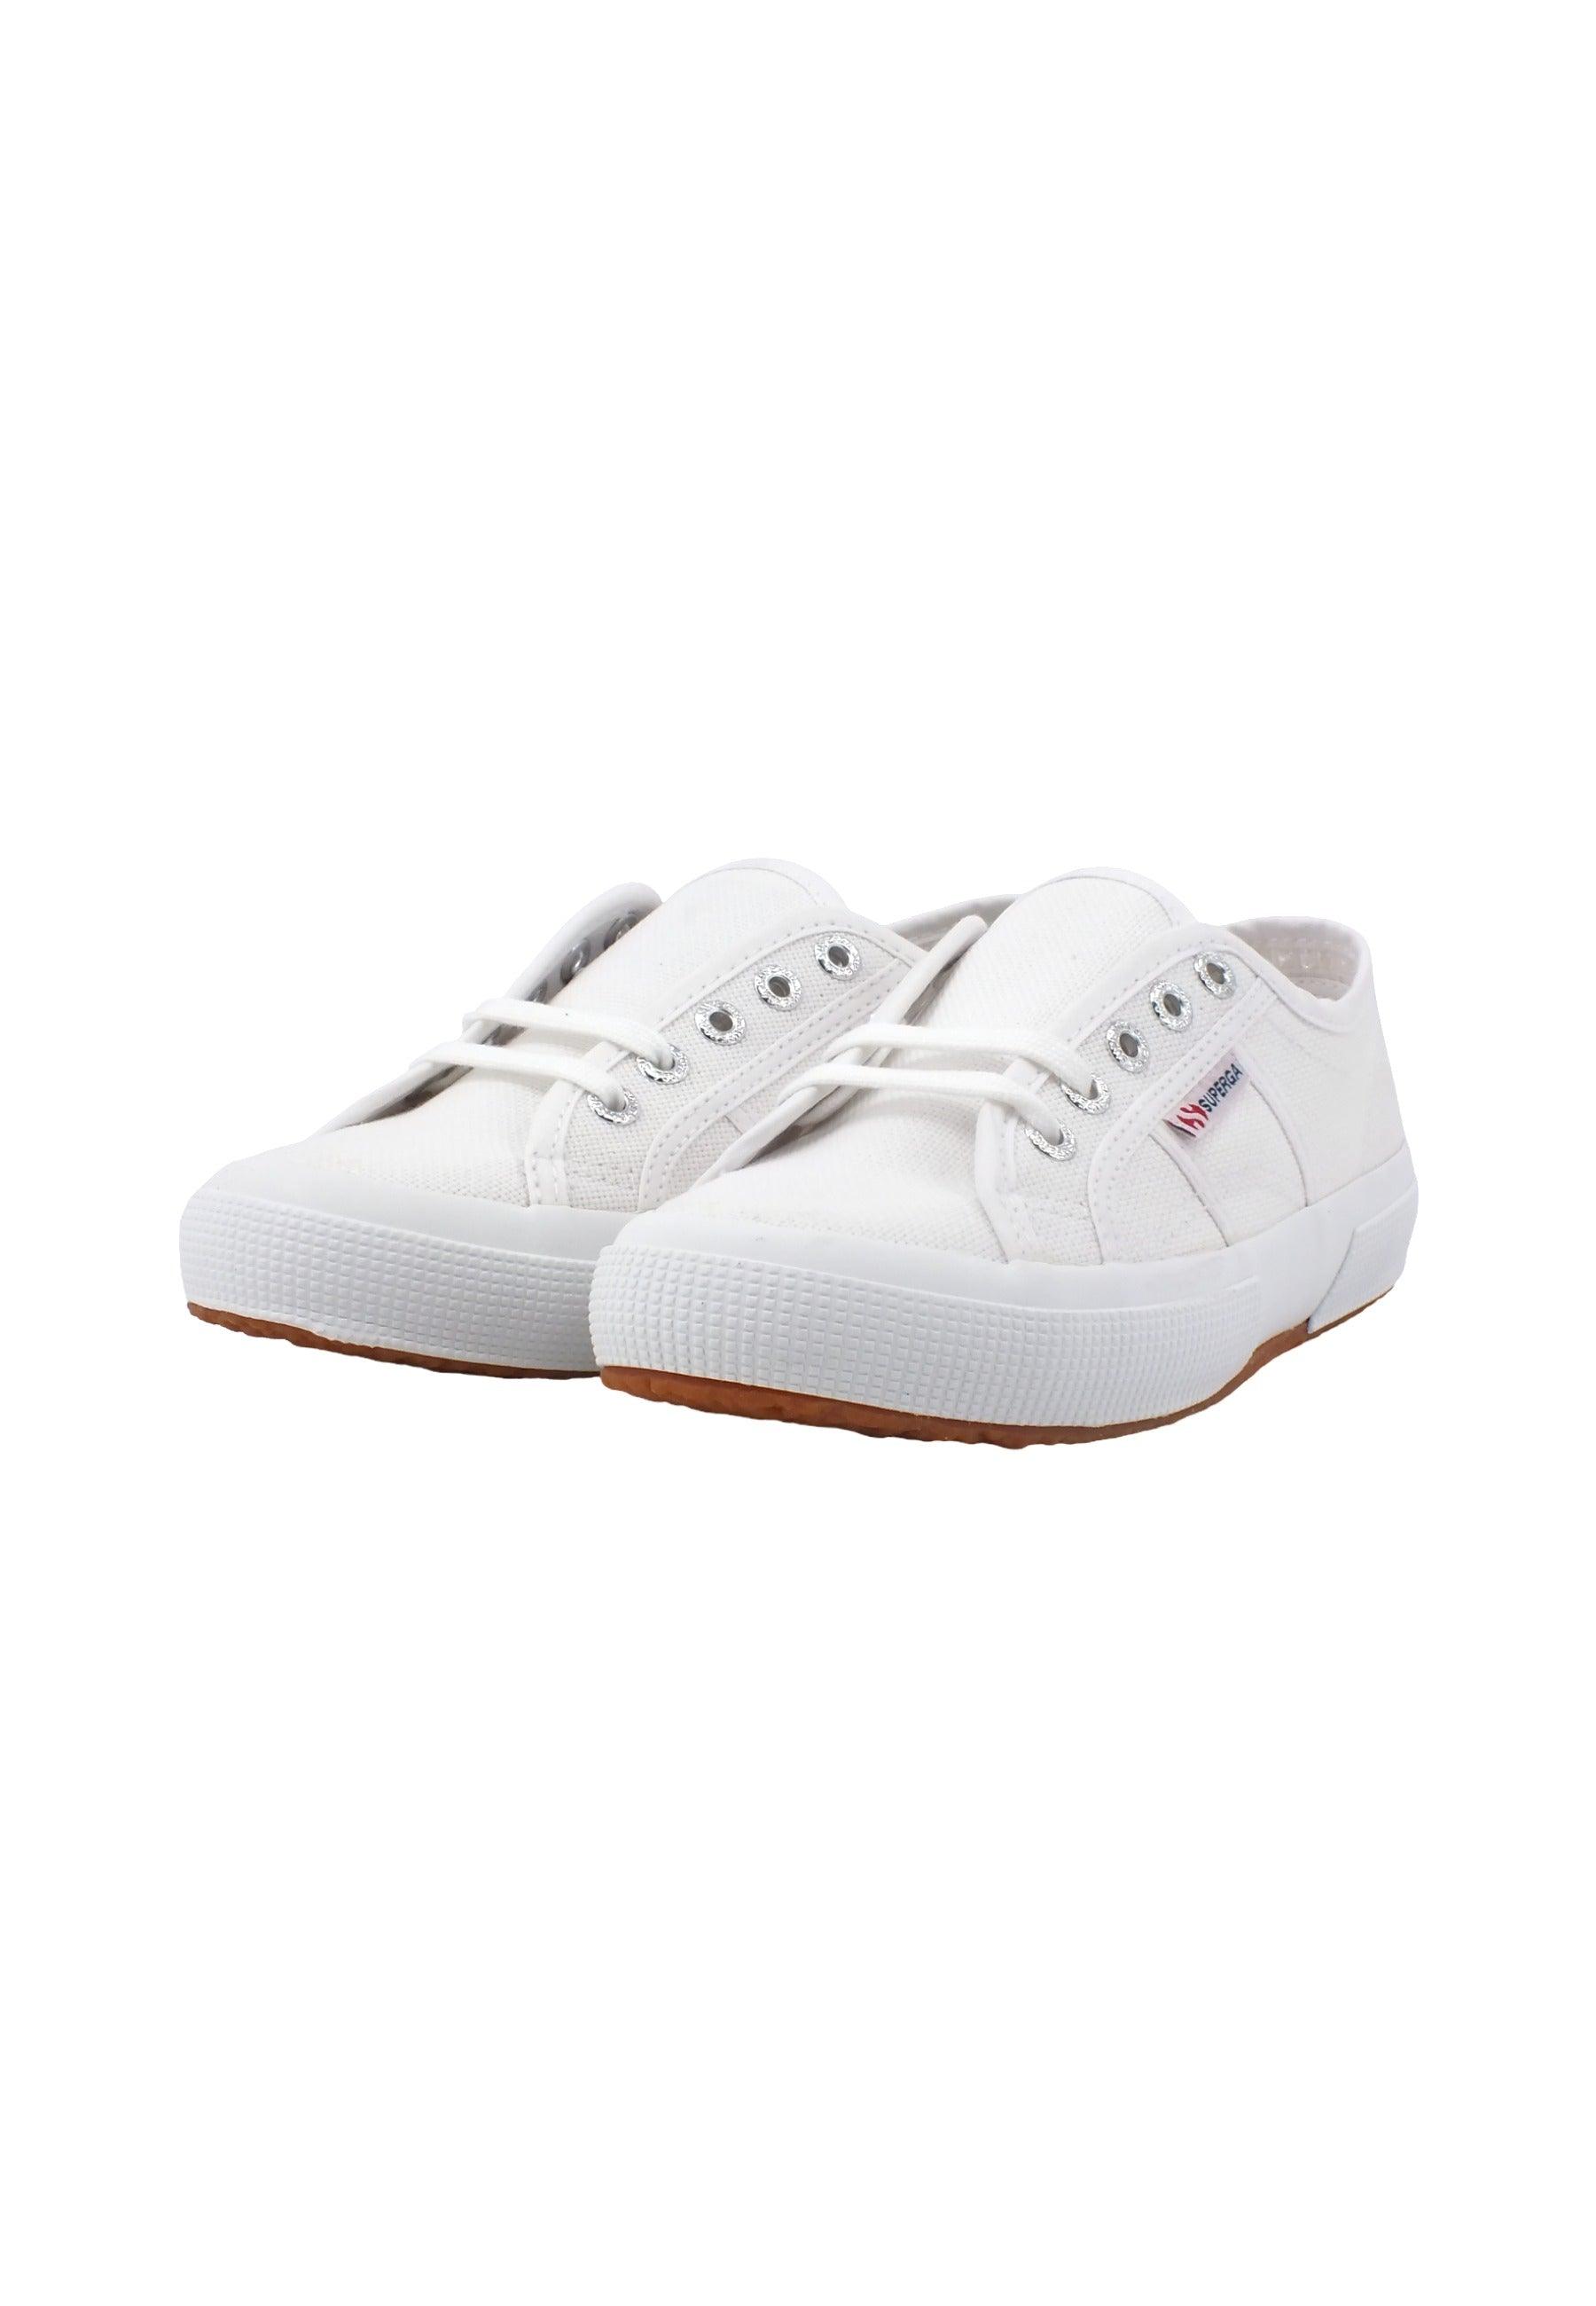 SUPERGA 2750 Cotu Classic Sneaker Donna White S000010 - Sandrini Calzature e Abbigliamento